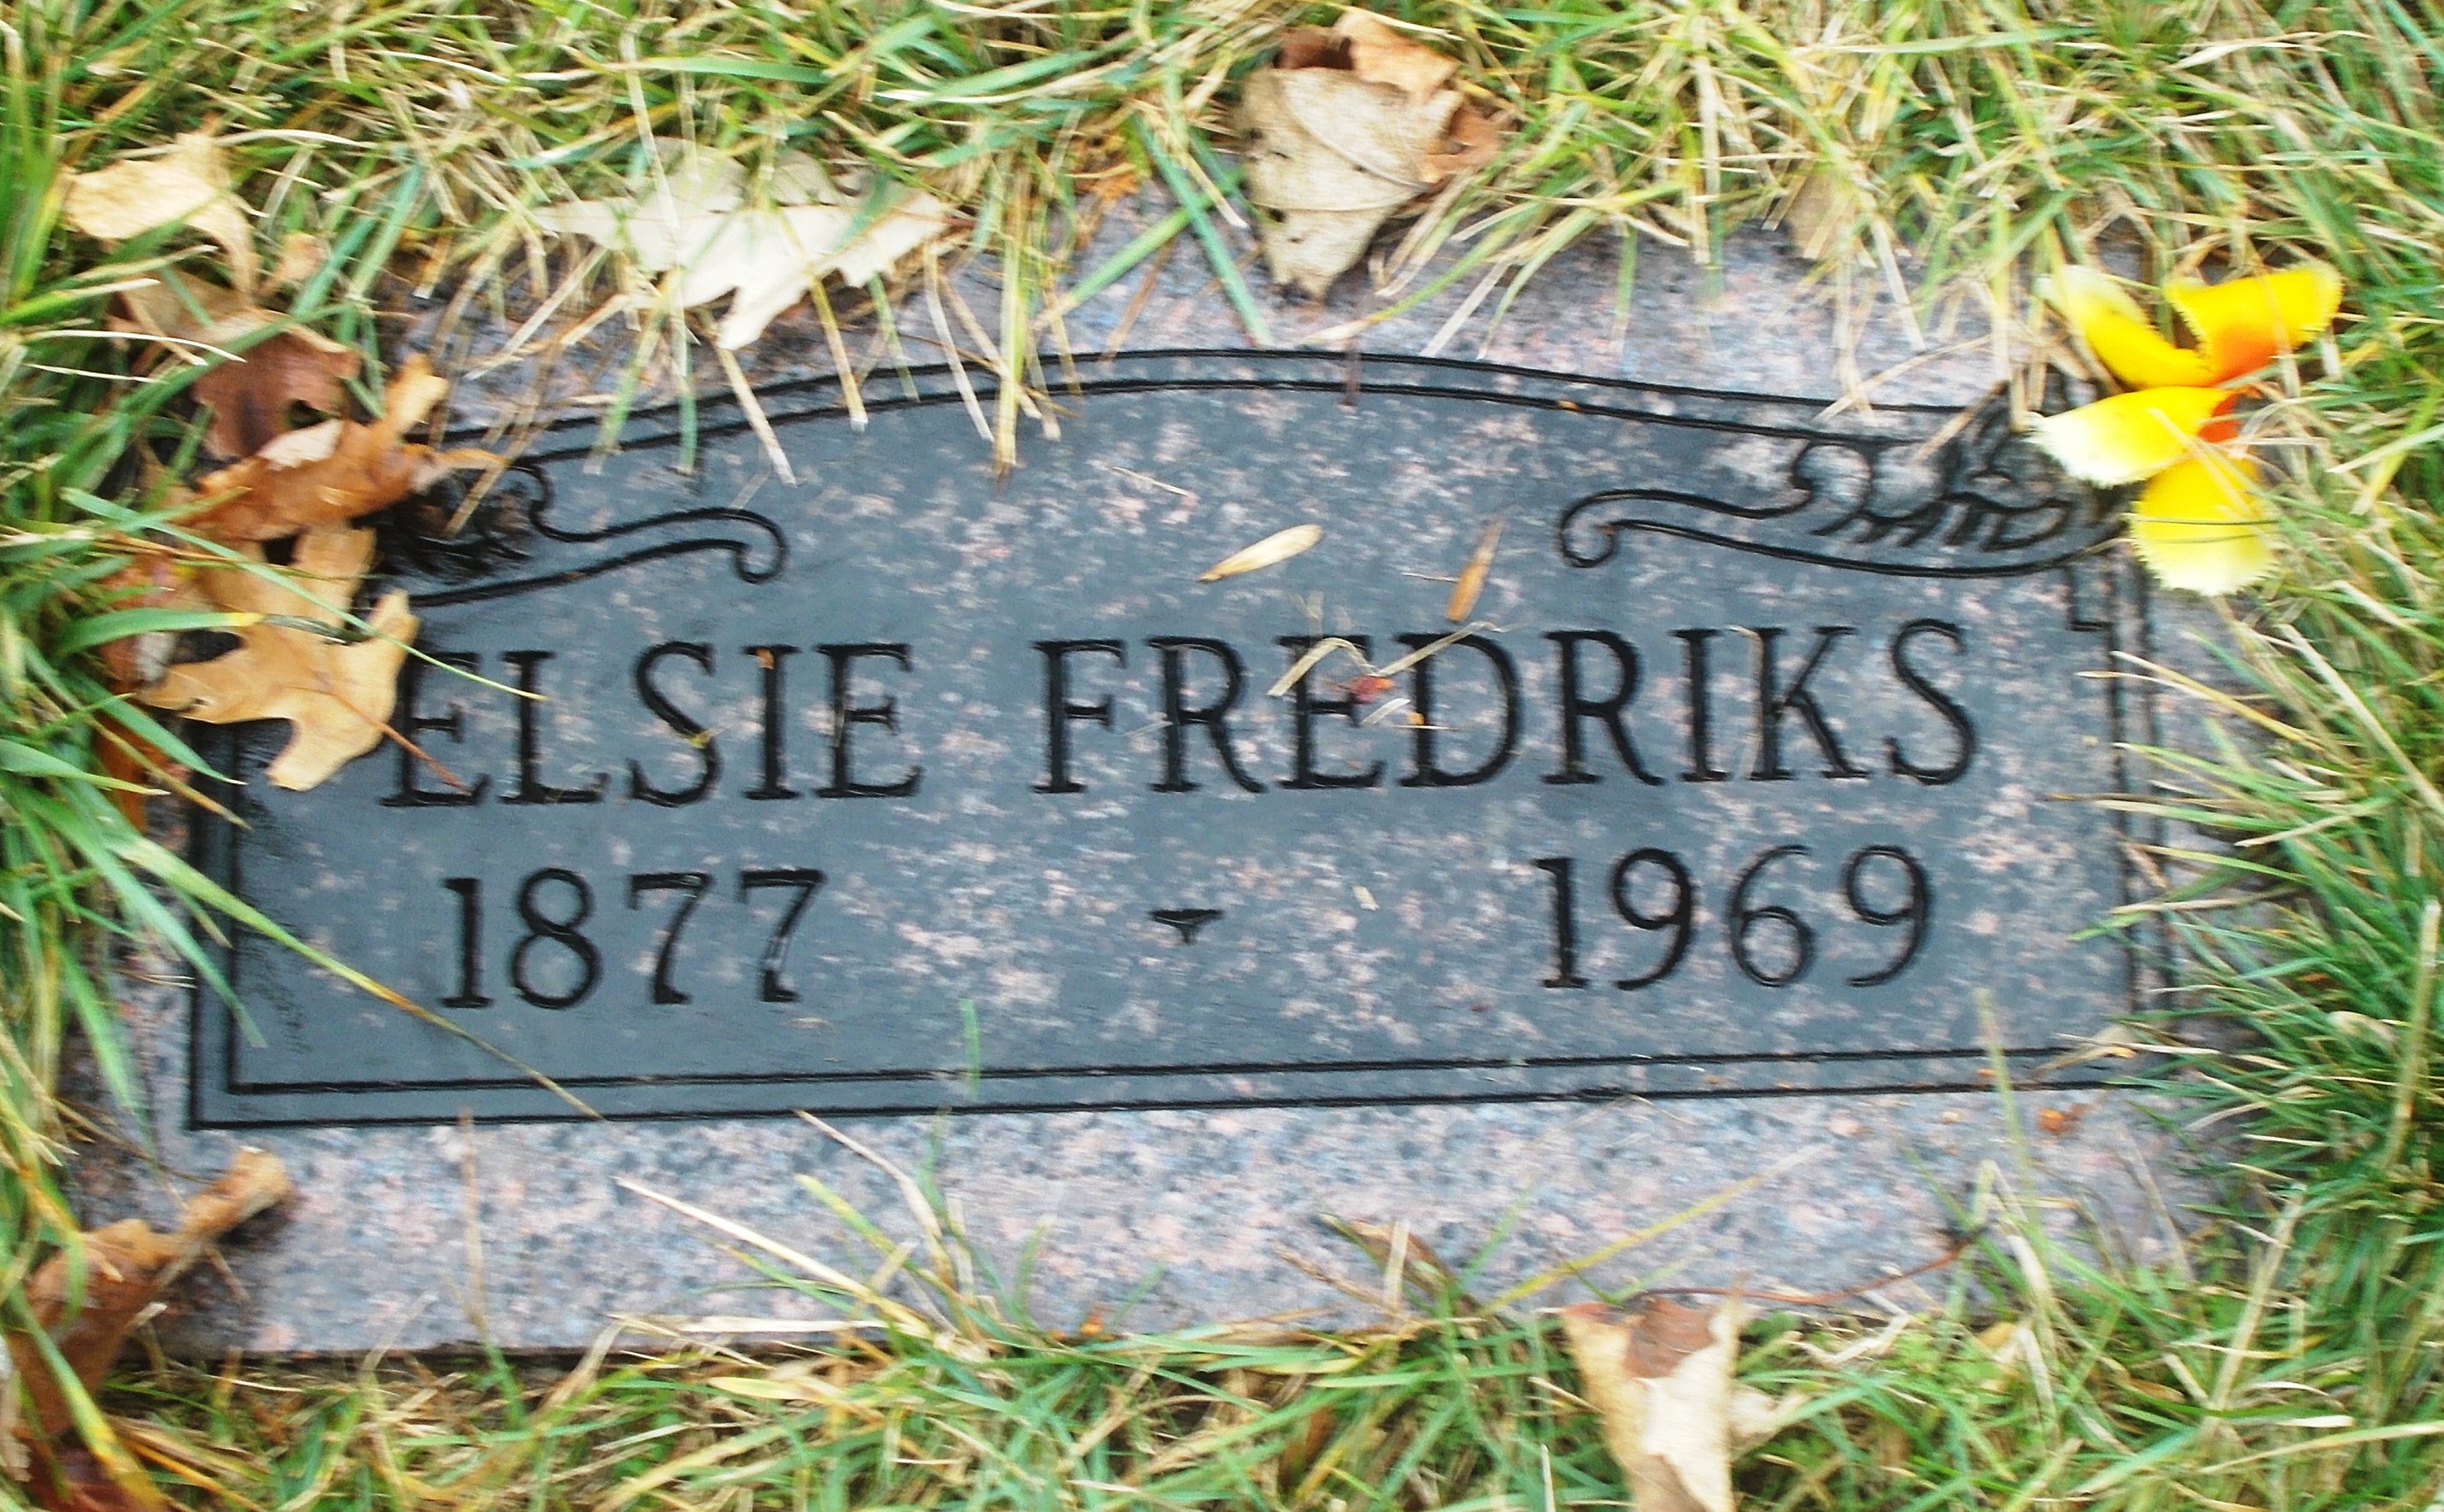 Elsie Fredriks